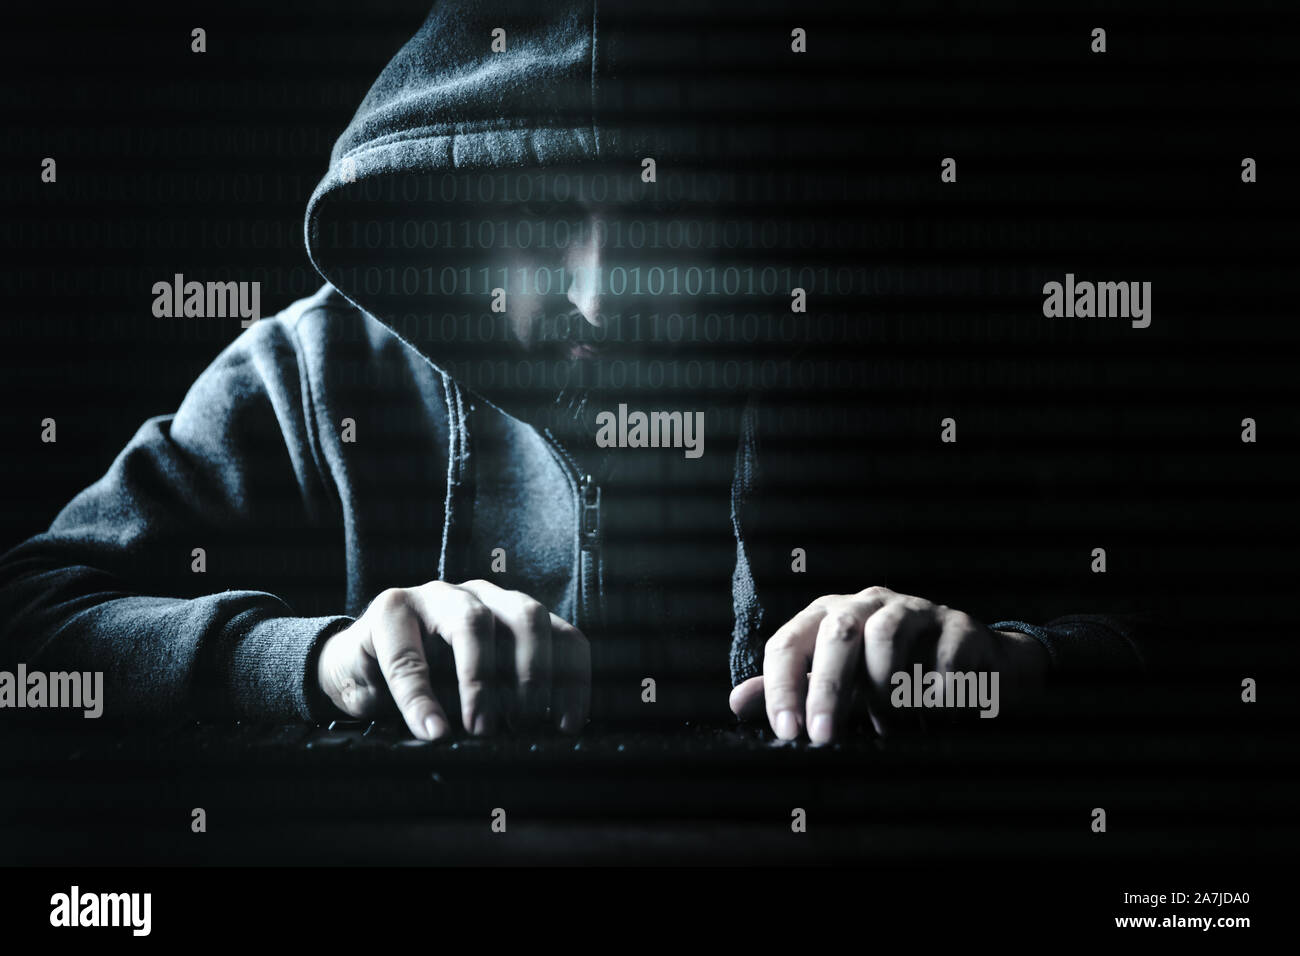 Concepto de piratas informáticos y la criminalidad en internet, un hombre en la oscuridad Foto de stock